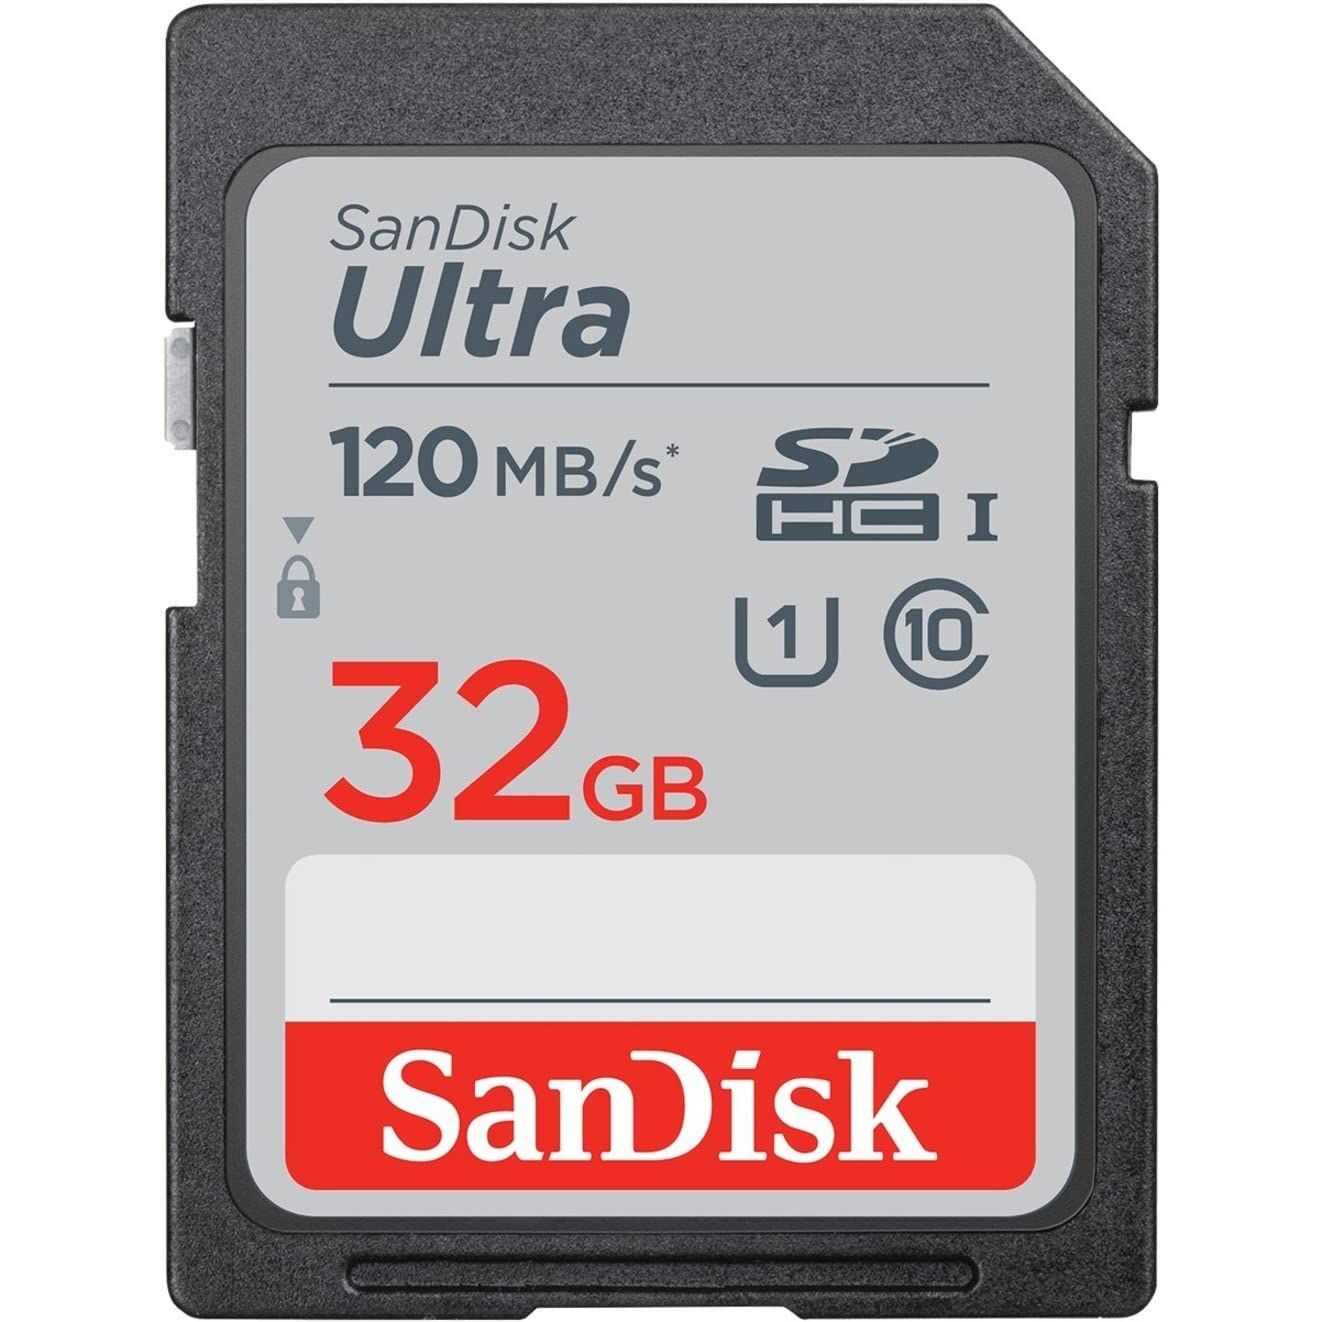 32GB SanDisk サンディスク USBメモリー Ultra Fit USB 3.1 Gen1対応 R:130MB s 超小型設計 ブラック 海外リテール SDCZ430-032G-G46 ◆メ